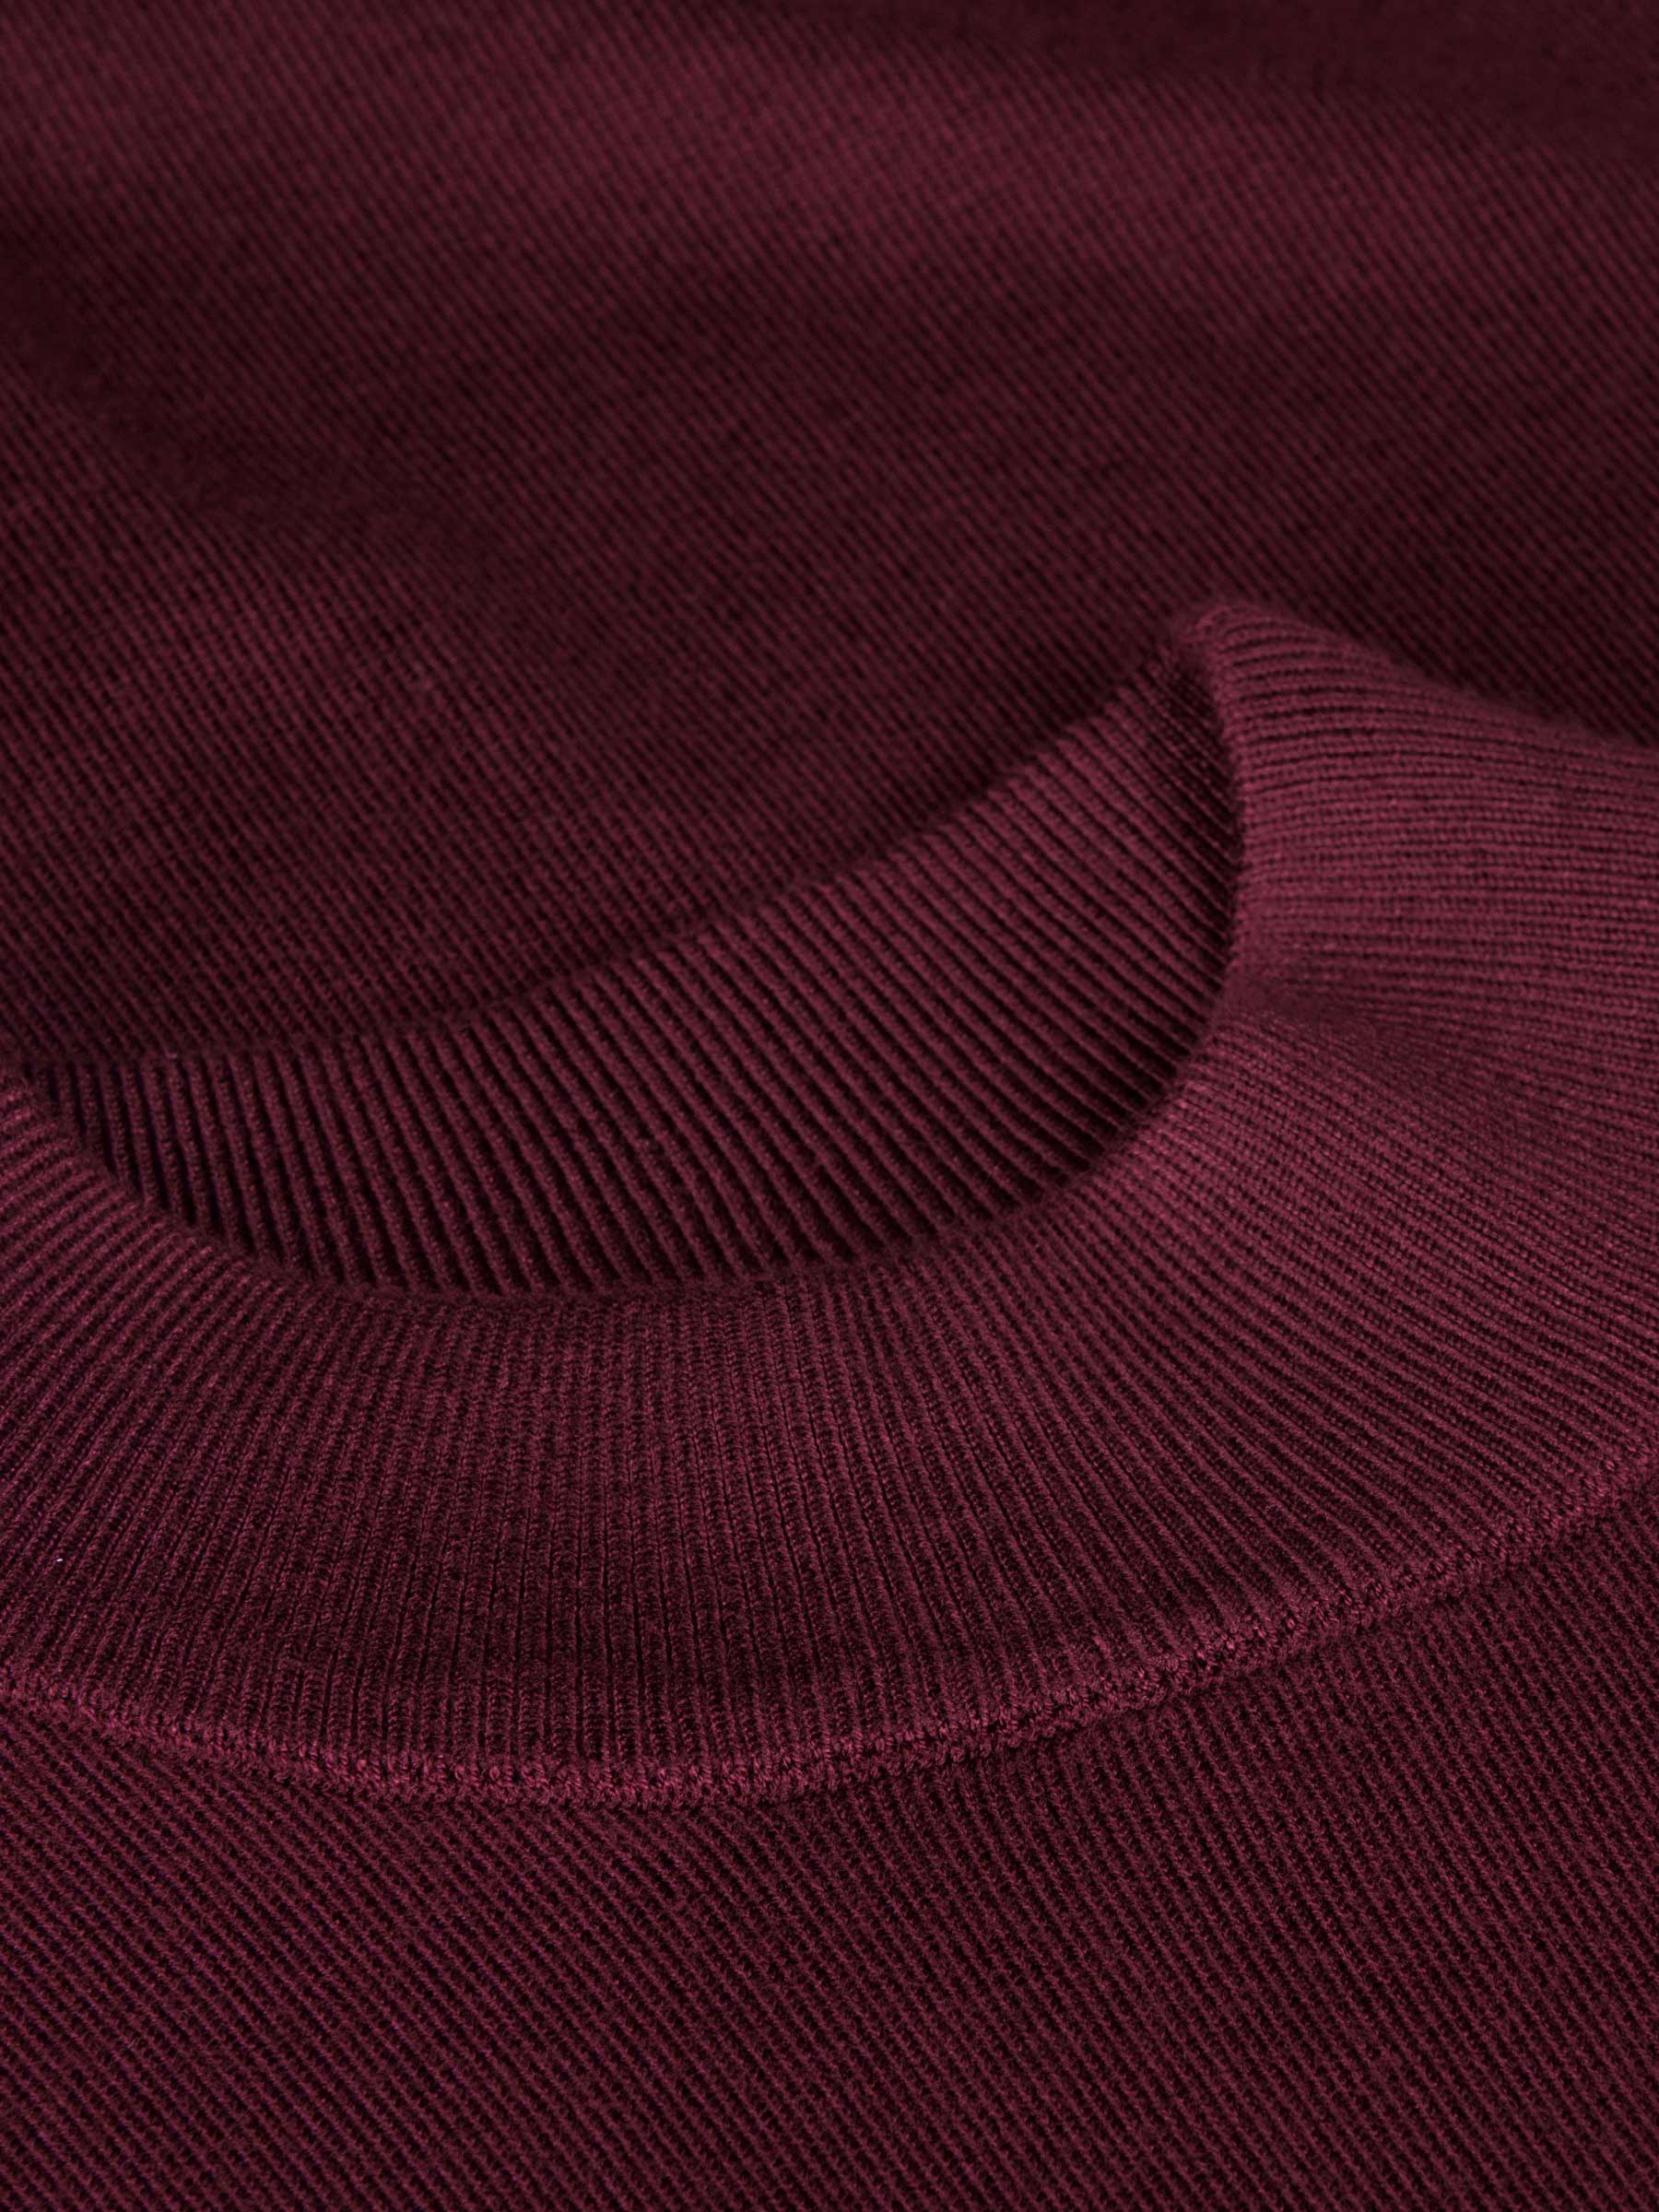 Siena Round-Necked Dark Red Sweater